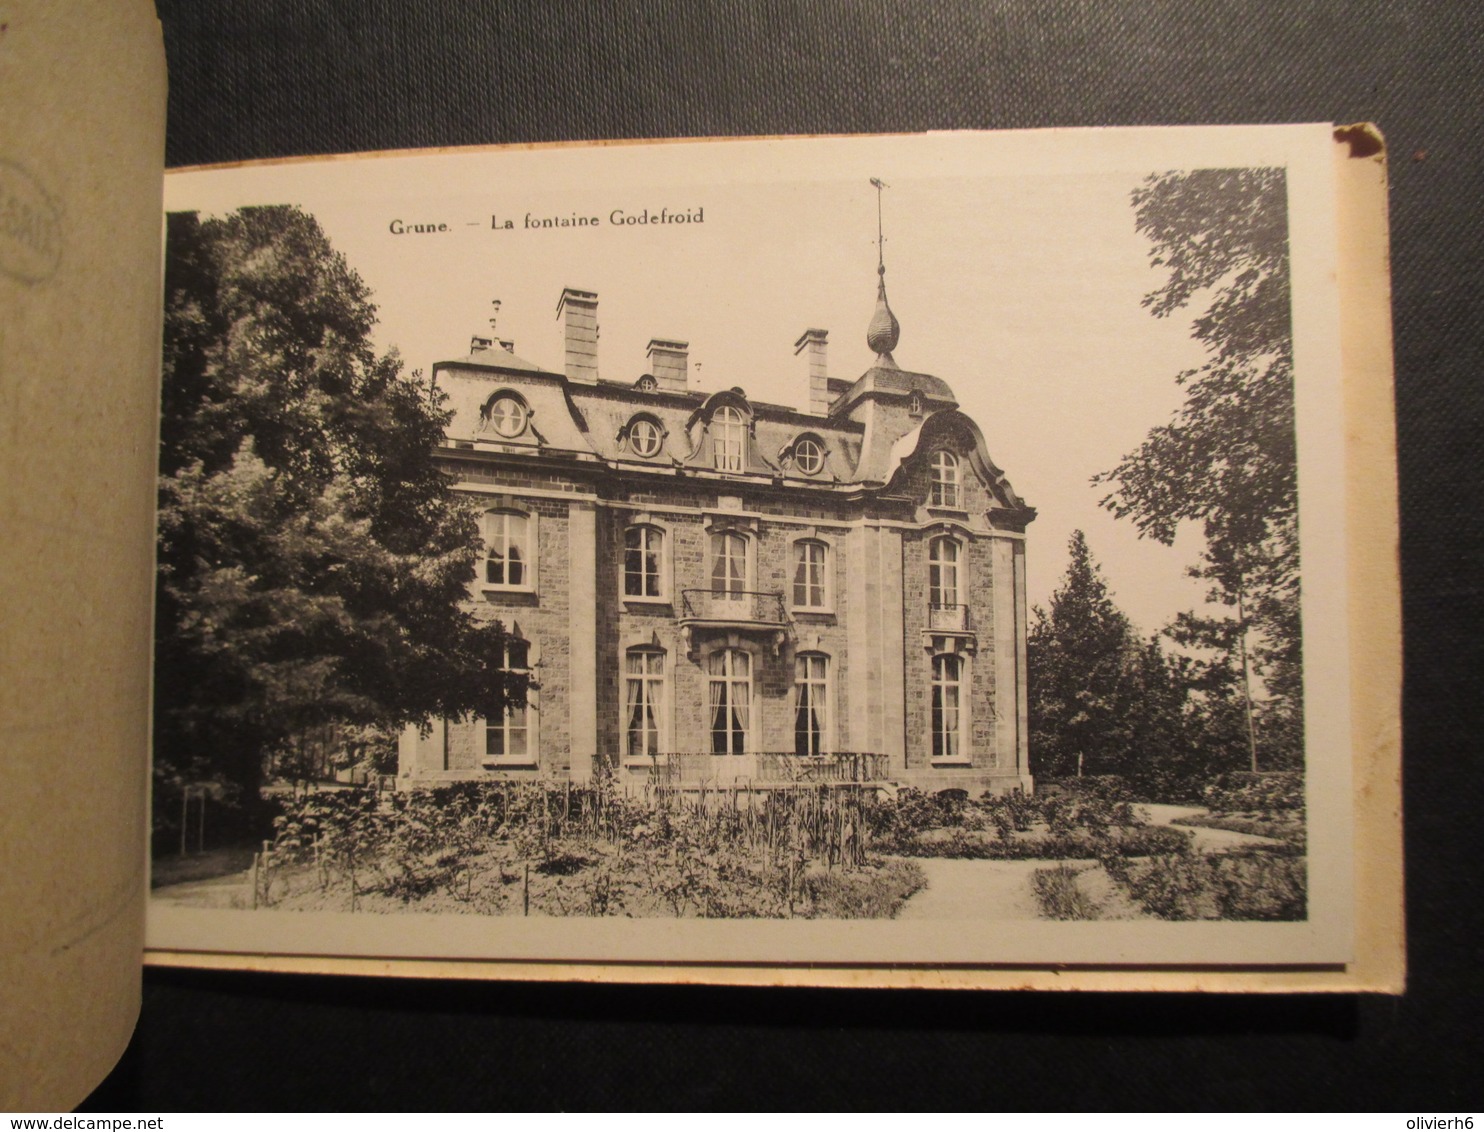 CARNET CP LUXEMBOURG (V1823) GRUNE /s WAMME (9 vues) Arret de l'autorail, Maison Praile-Picard, le roly, Centre village